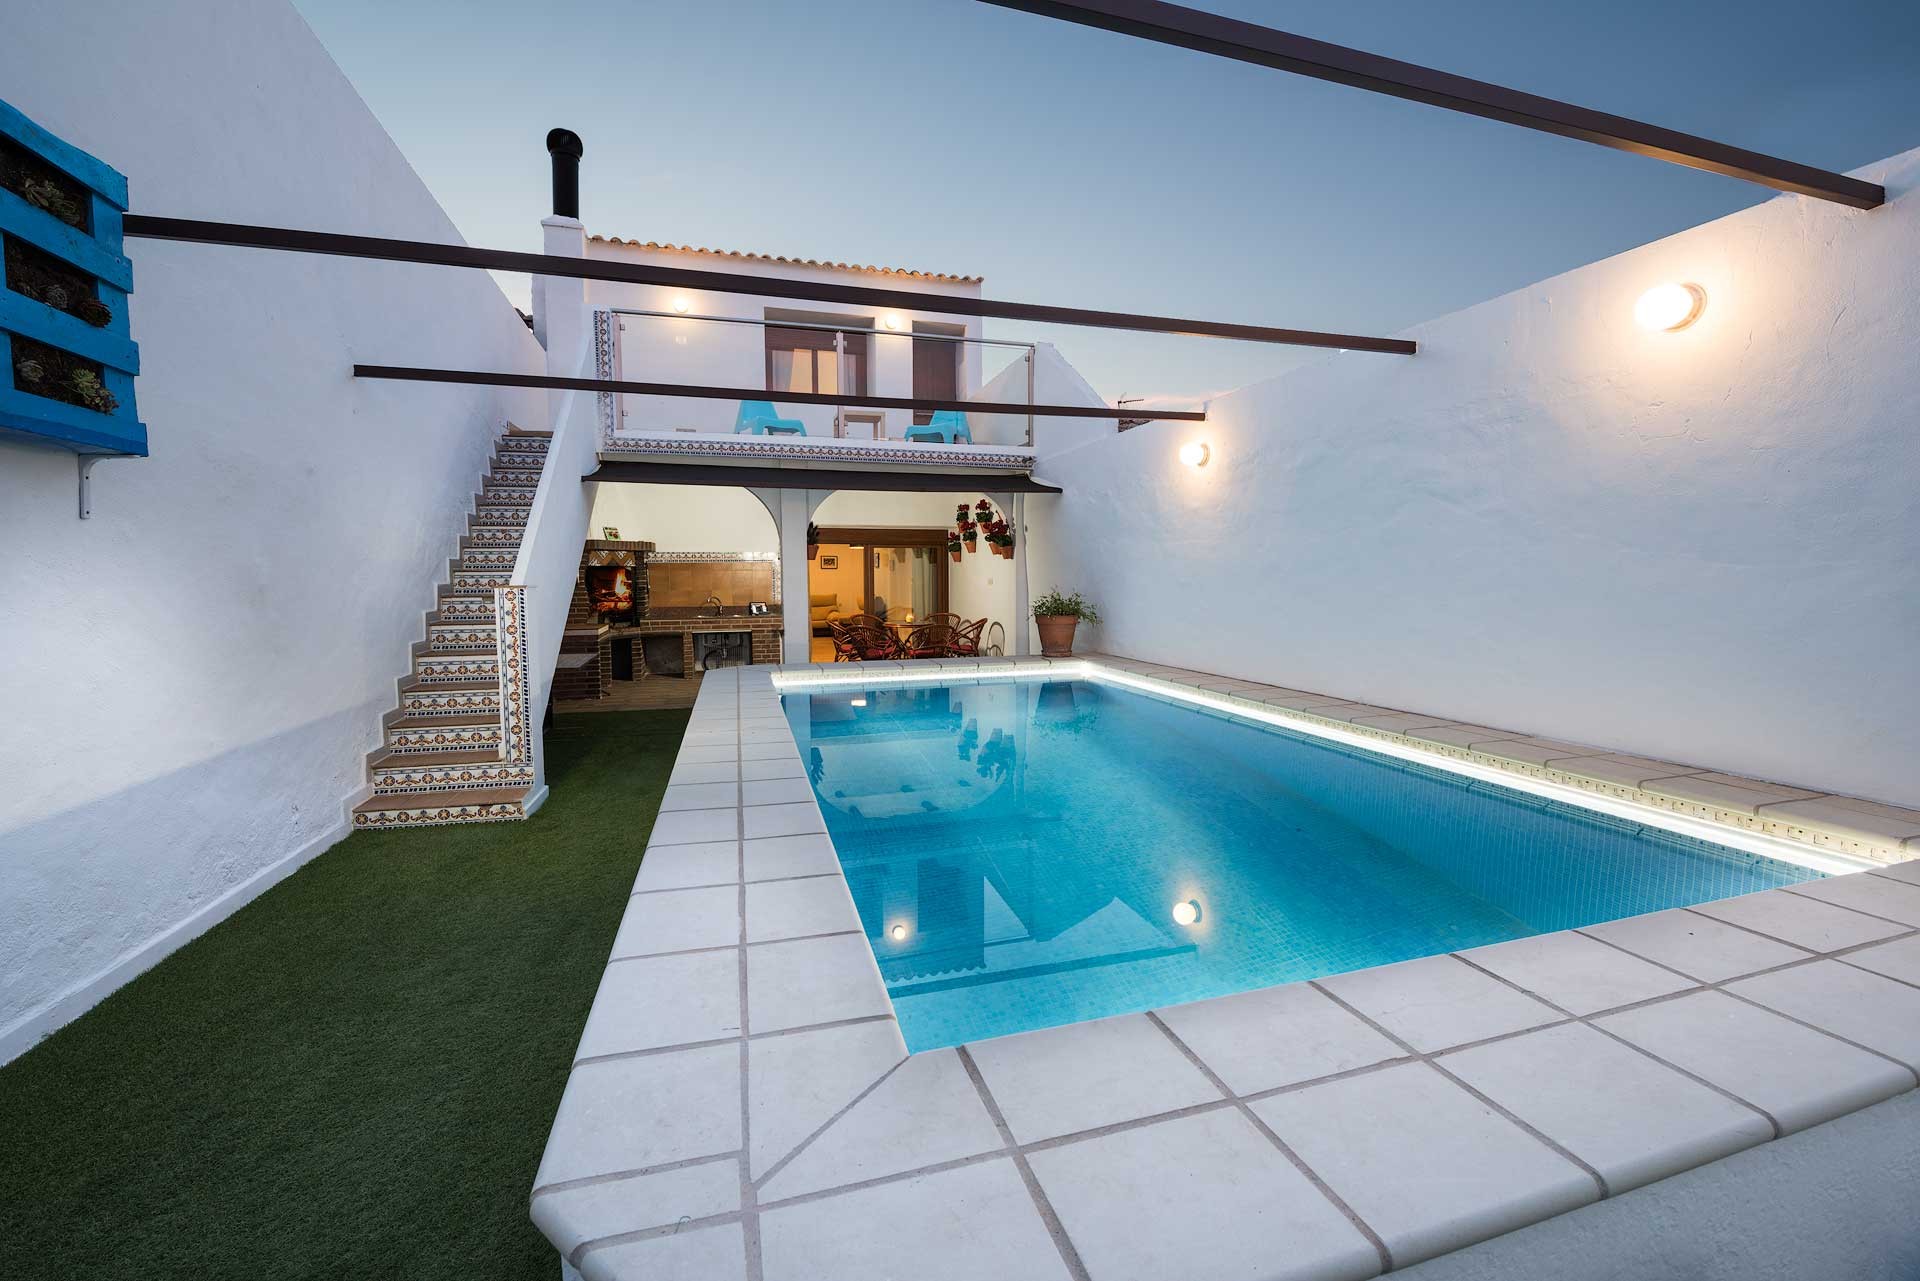 Casa blanca, piscina azul, terraza y escaleras estilo español.